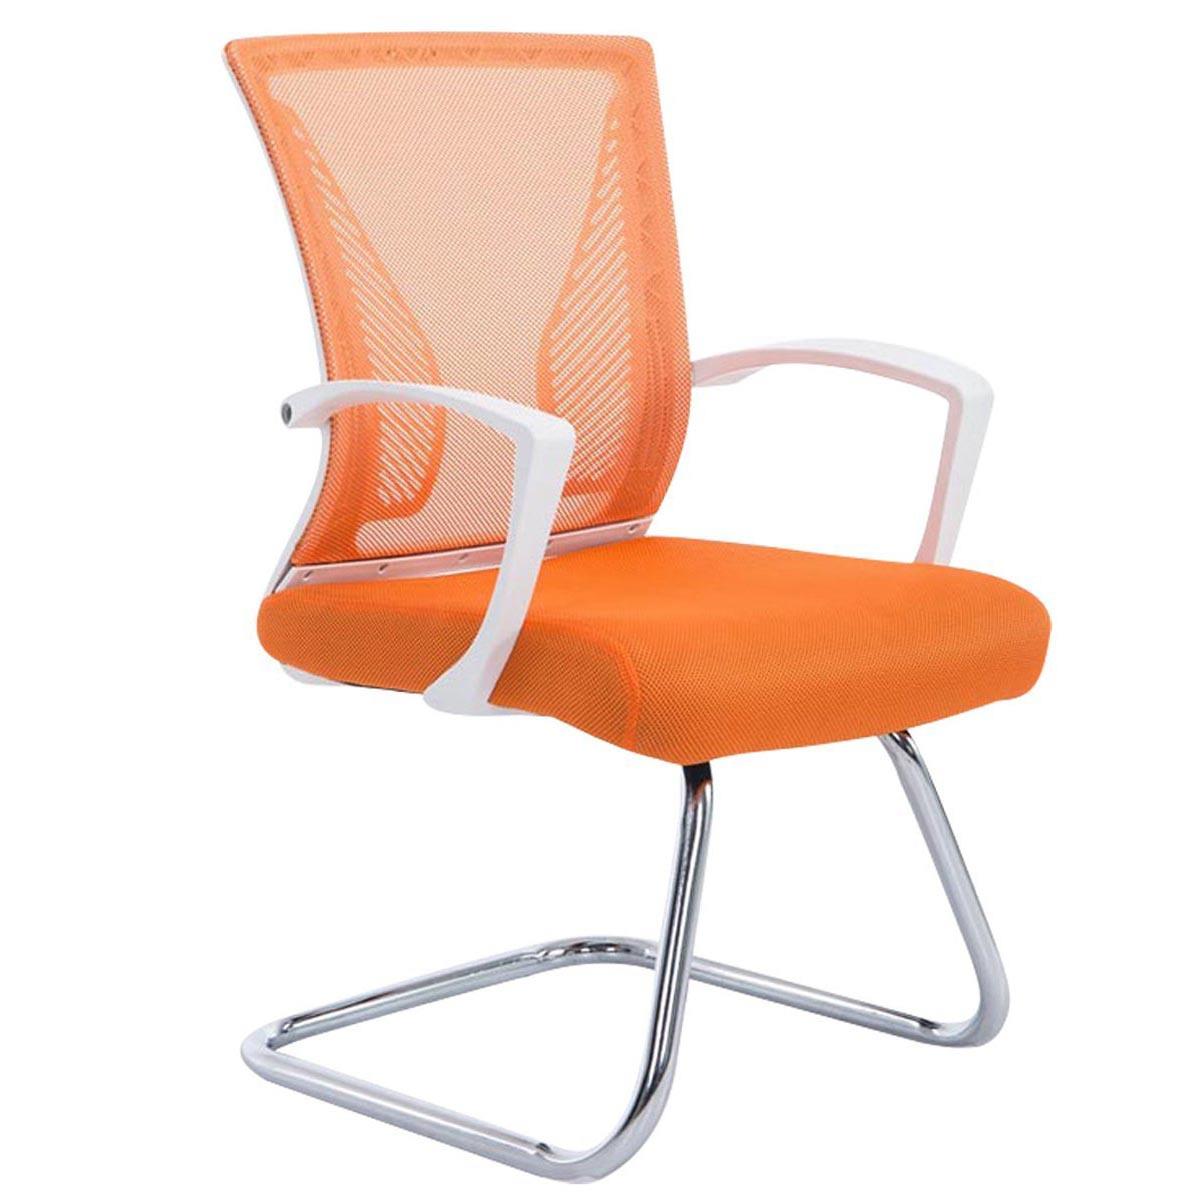 Chaise visiteur CUBA V, Structure Métallique, en Maille Respirable, Orange